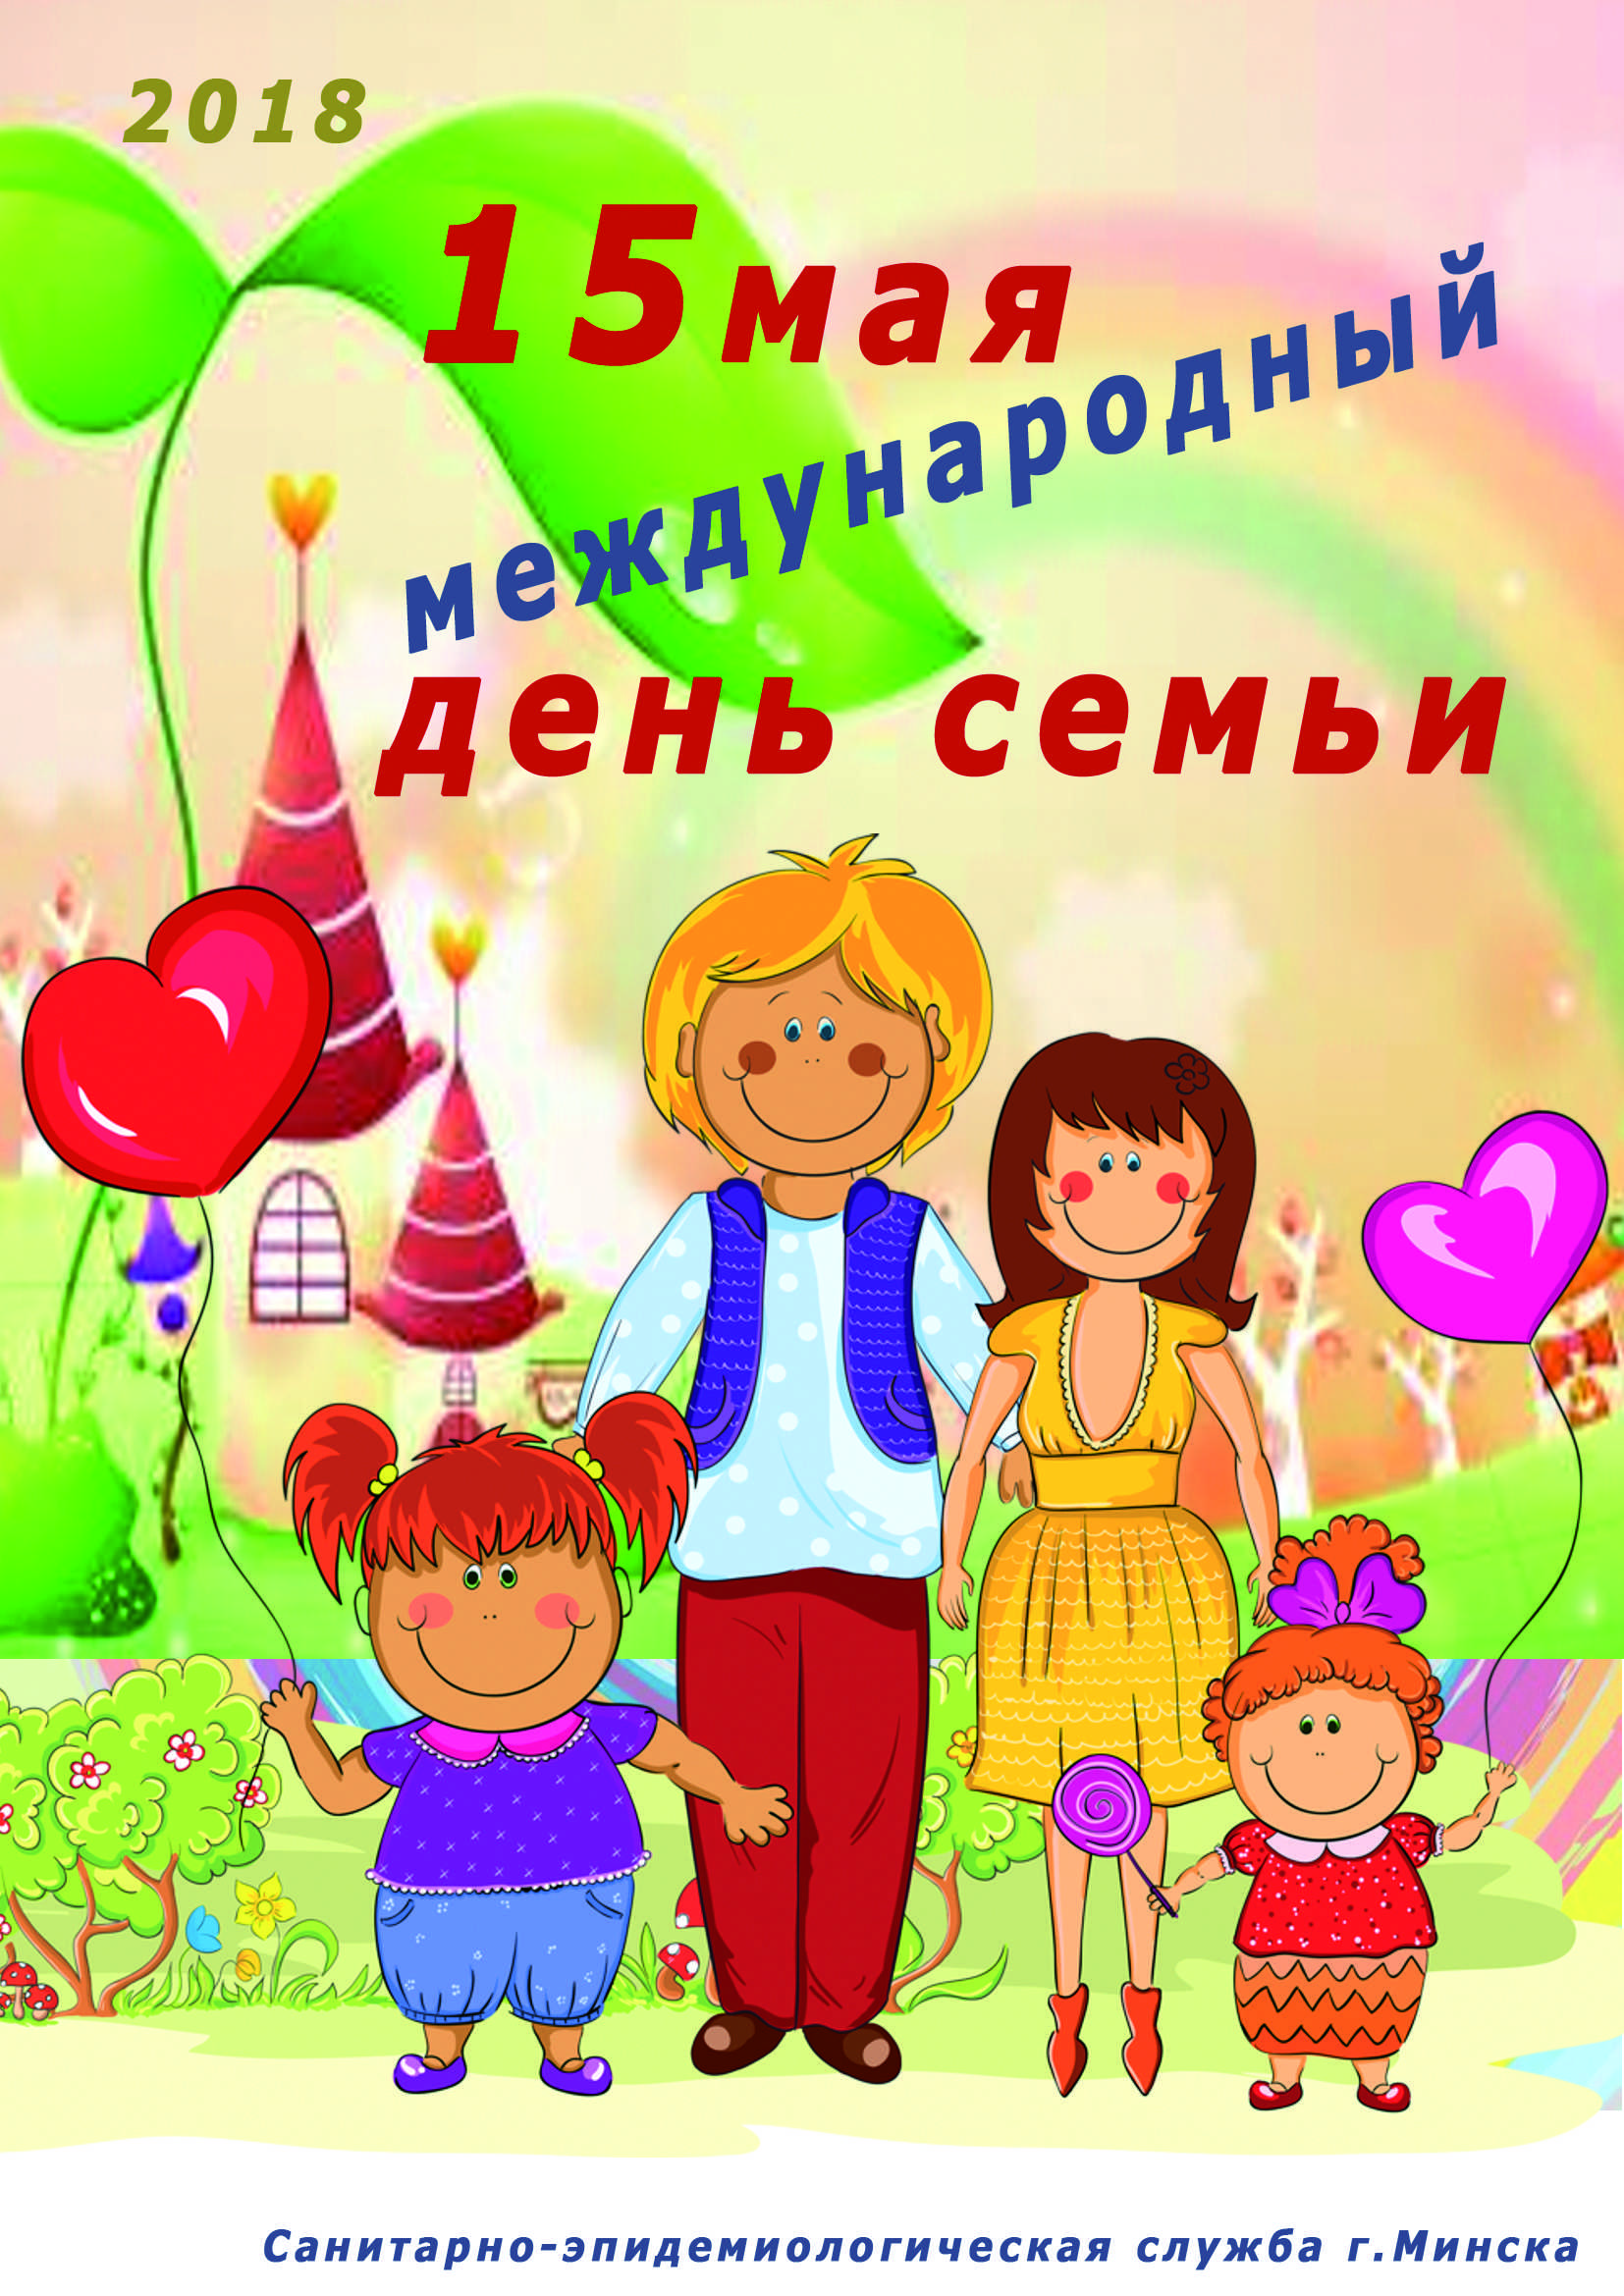 Международный день семьи отмечается 15 мая 2020 года: история праздника и поздравления